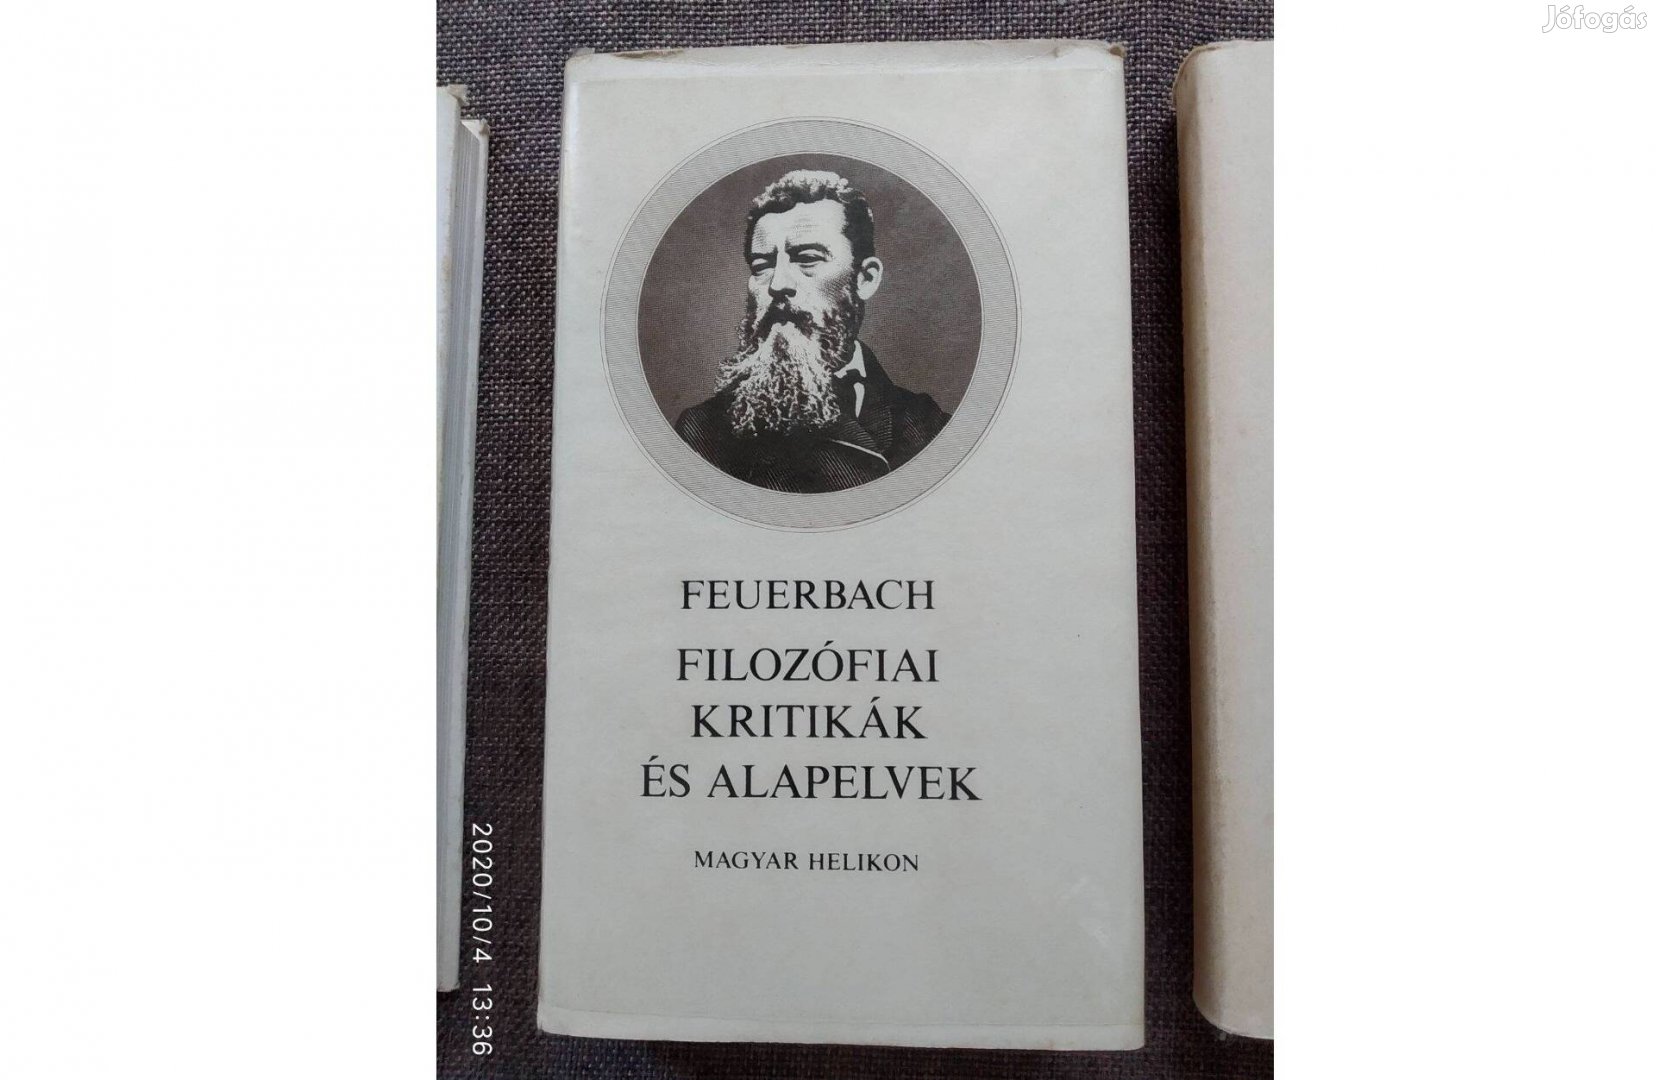 Feuerbach Filozófiai kritikák és alapelvek